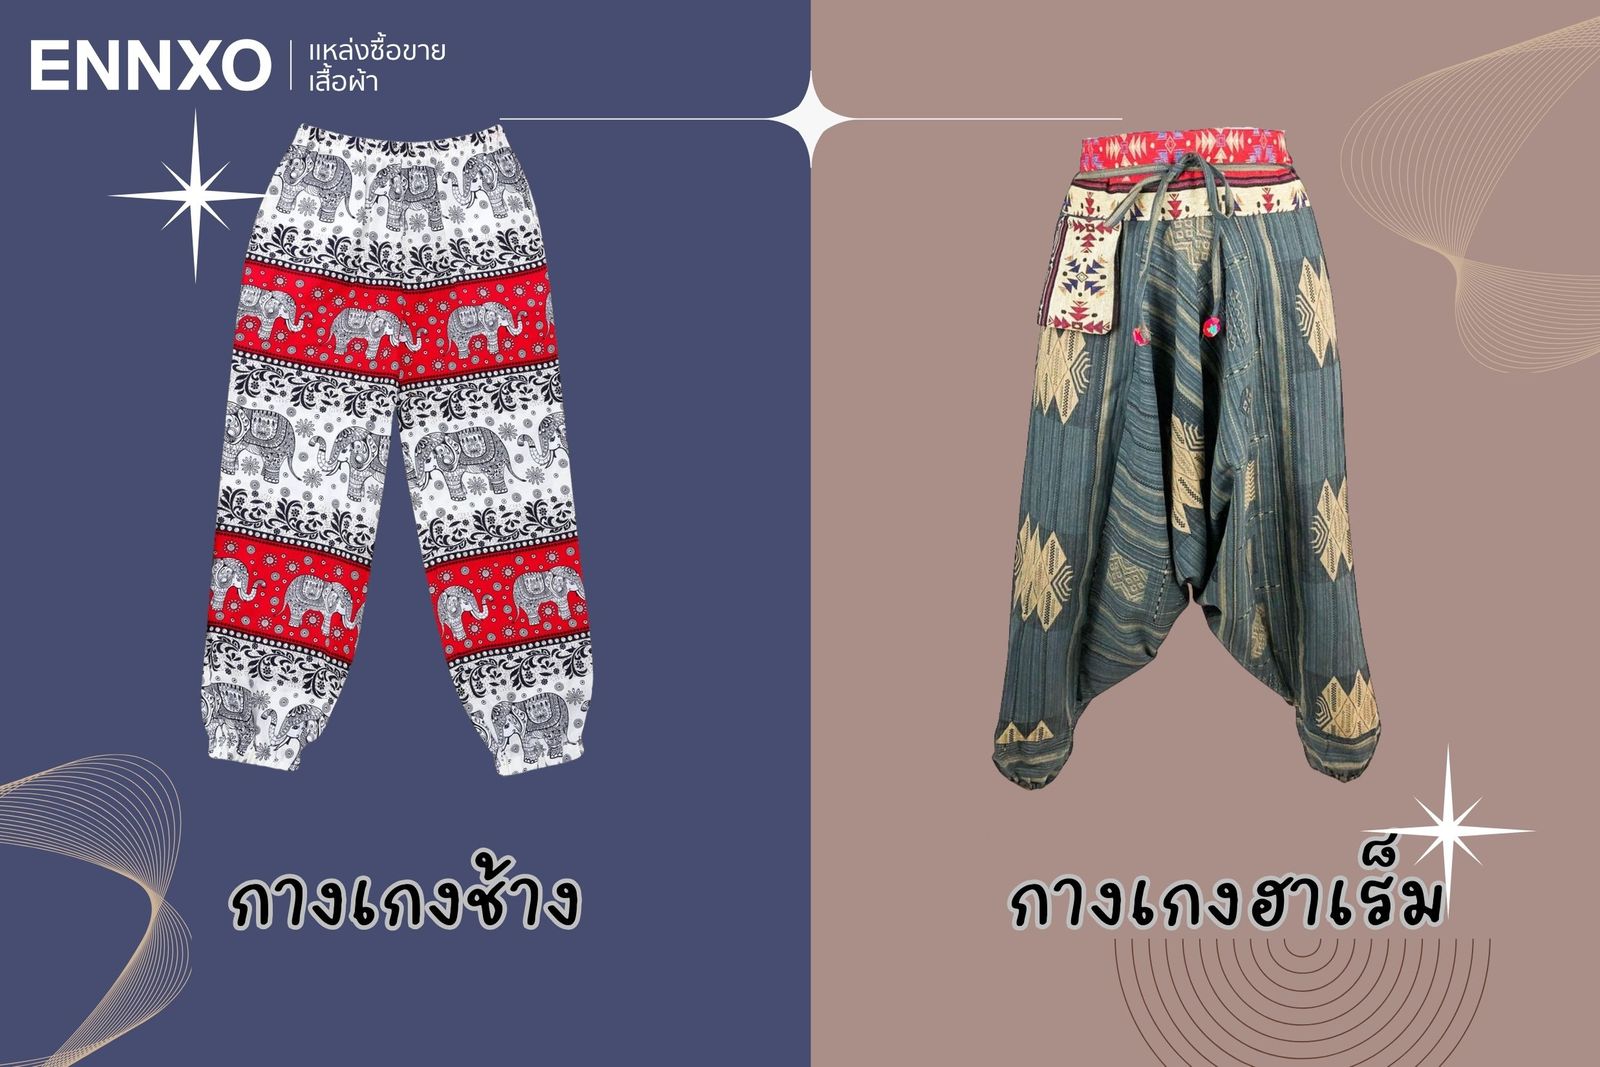 วิธีดูกางเกงช้าง กับกางเกงฮาเร็มต่างกันยังไง